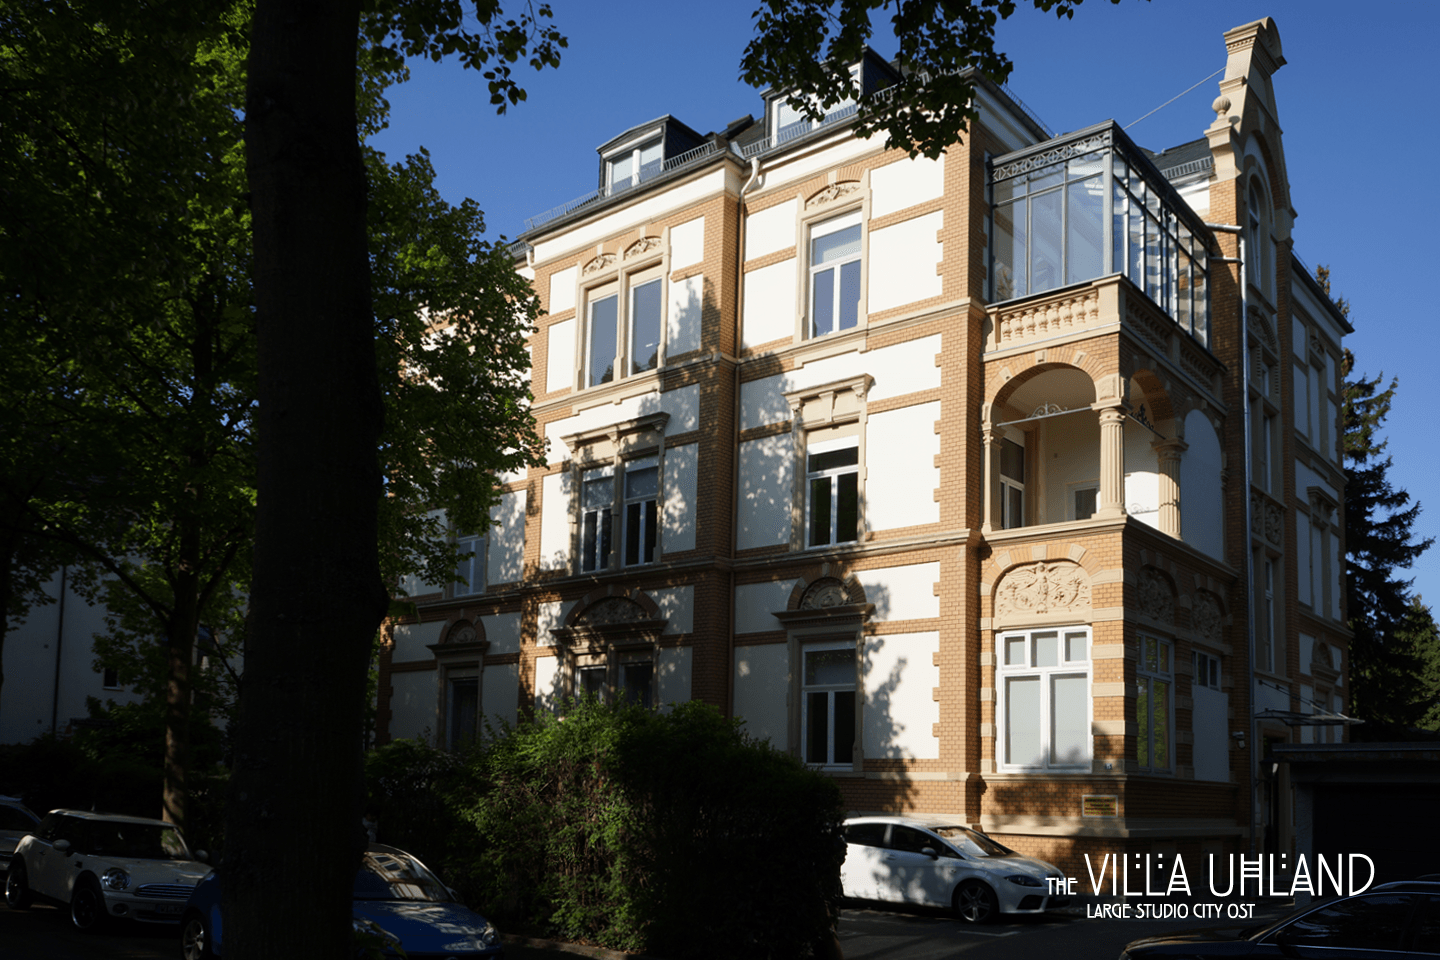 Villa Uhland - The House